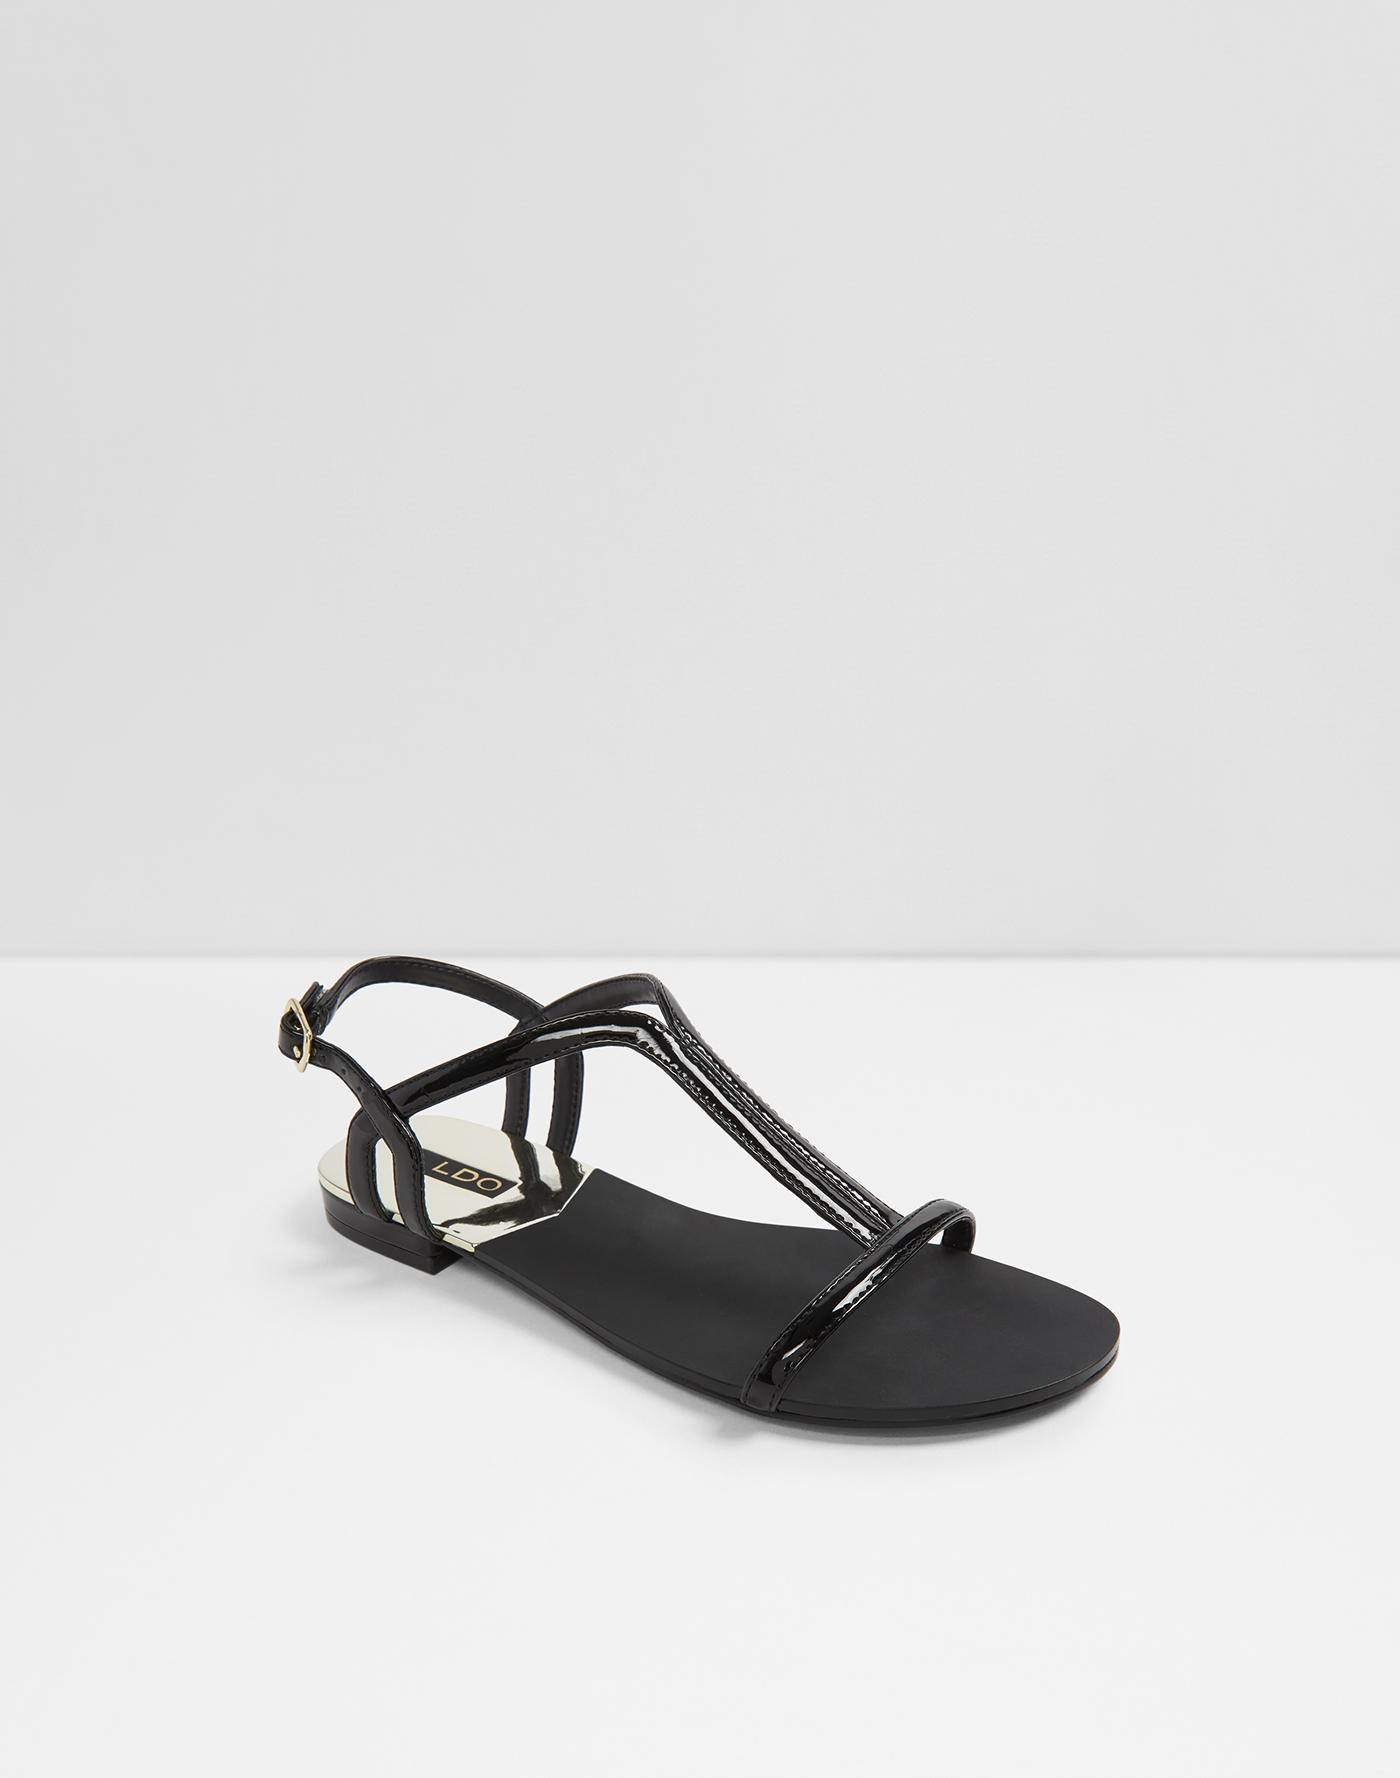 Sandals for Women | Aldoshoes.com US